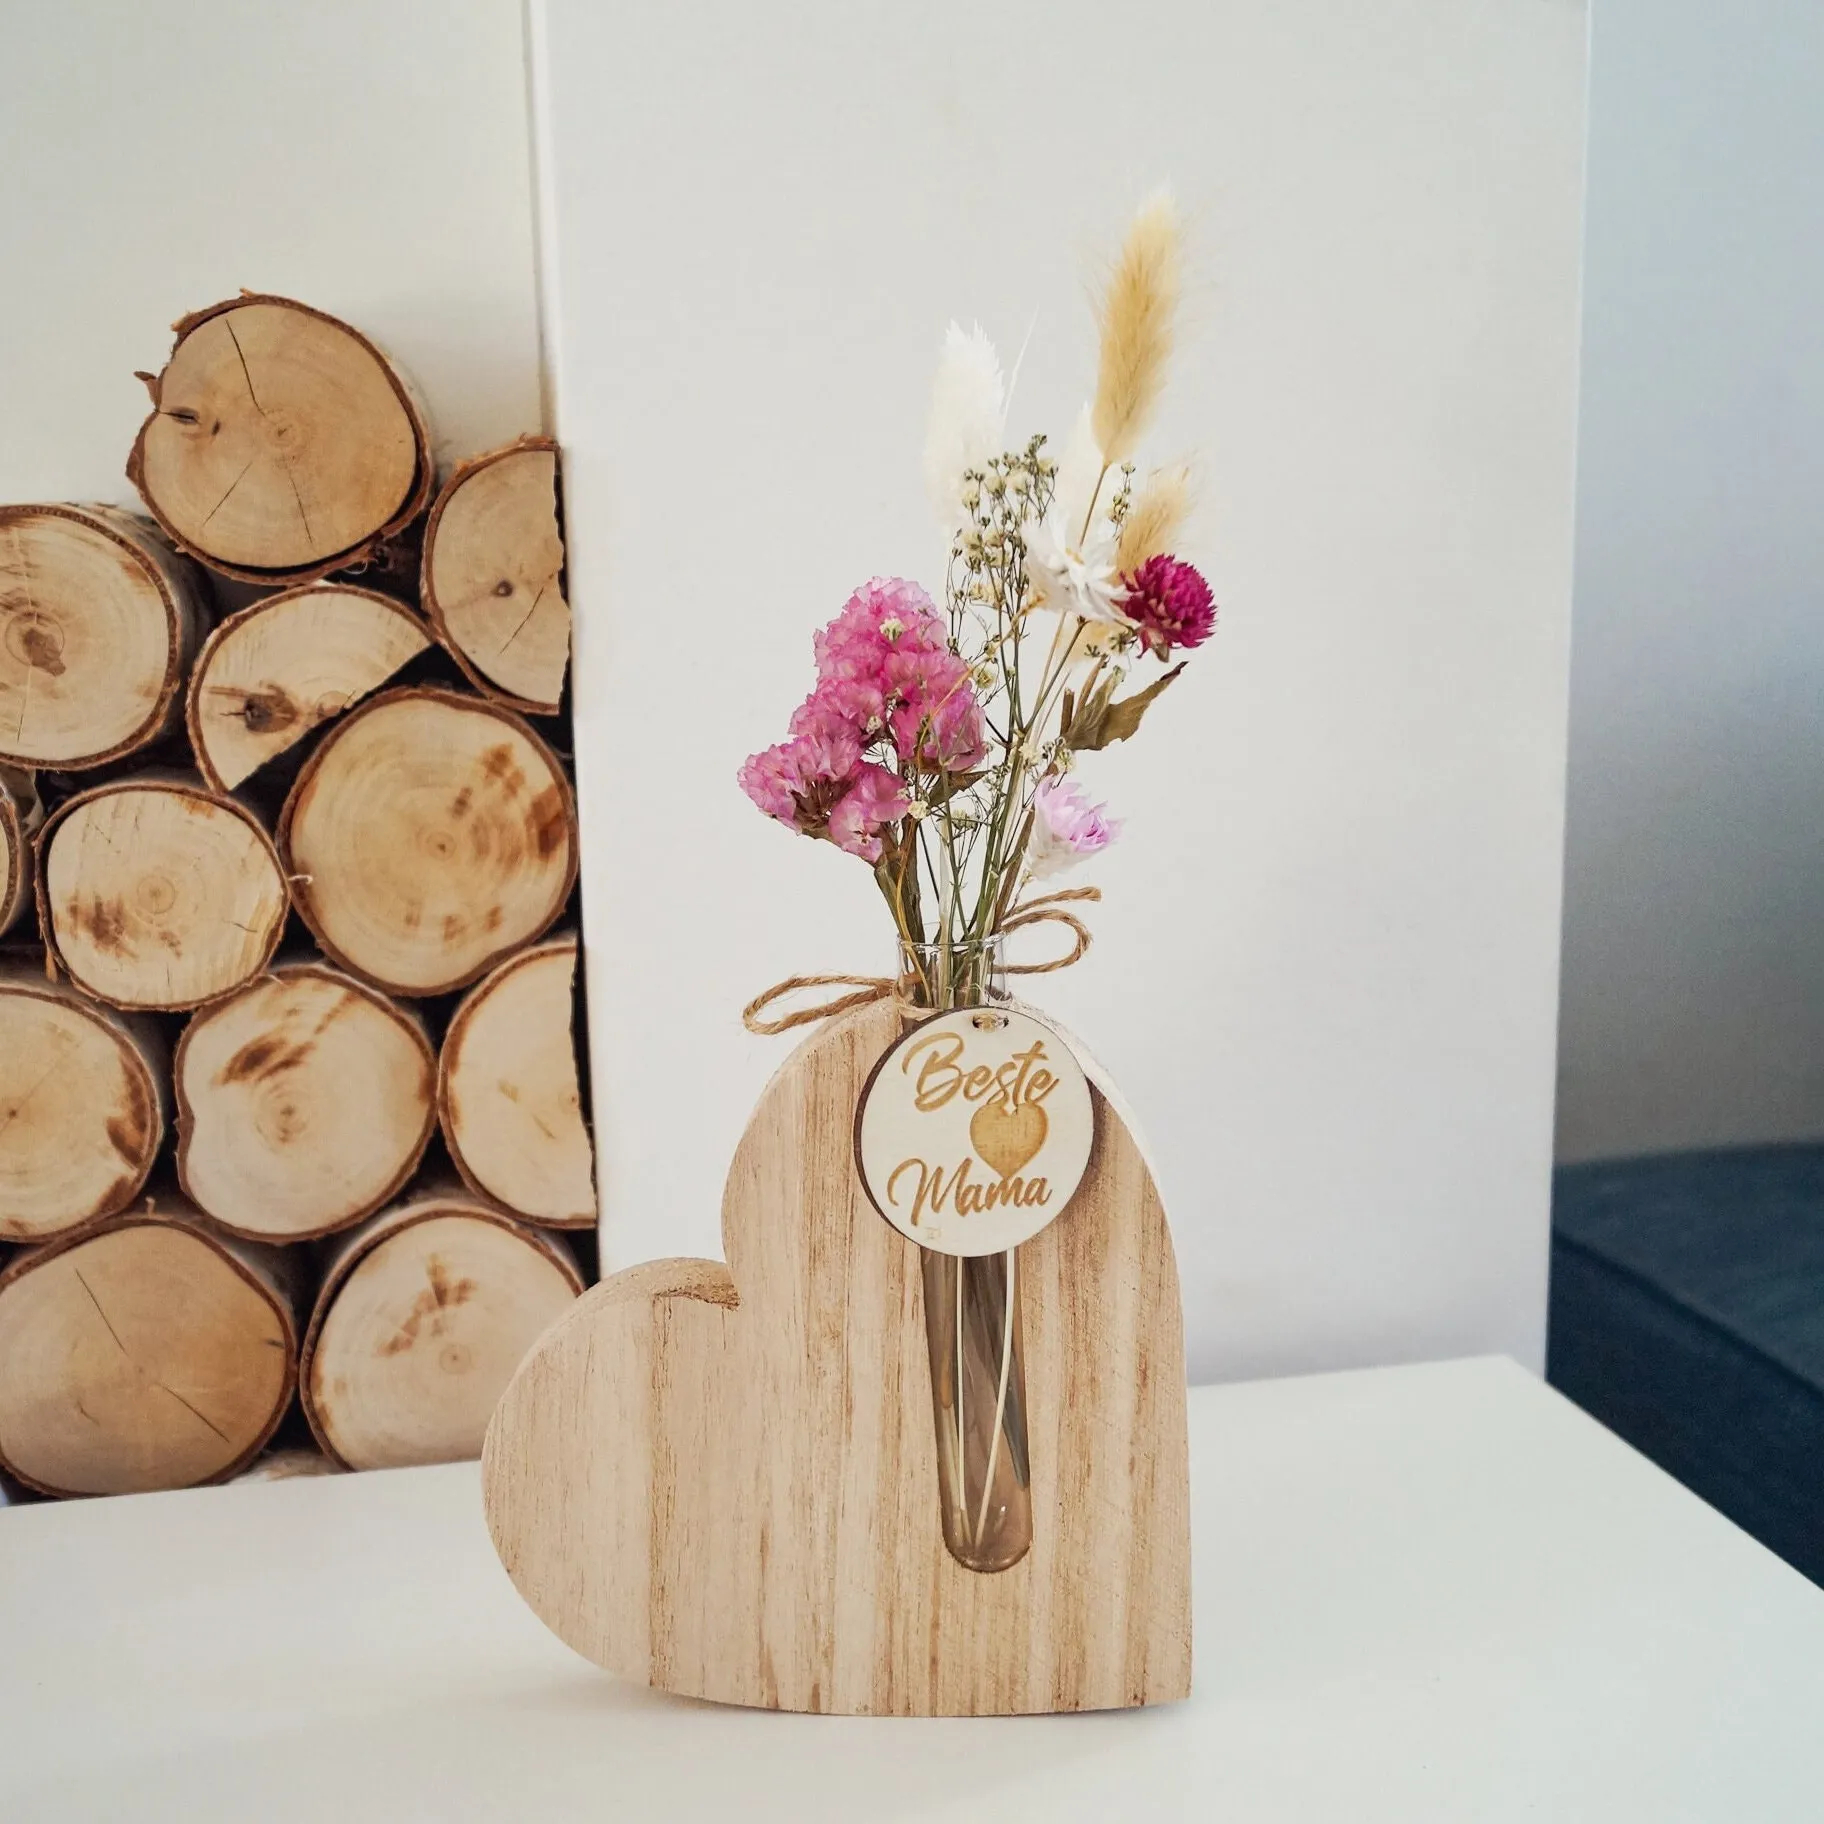 Test Tube Dried Flower Vase - Gift For Mom